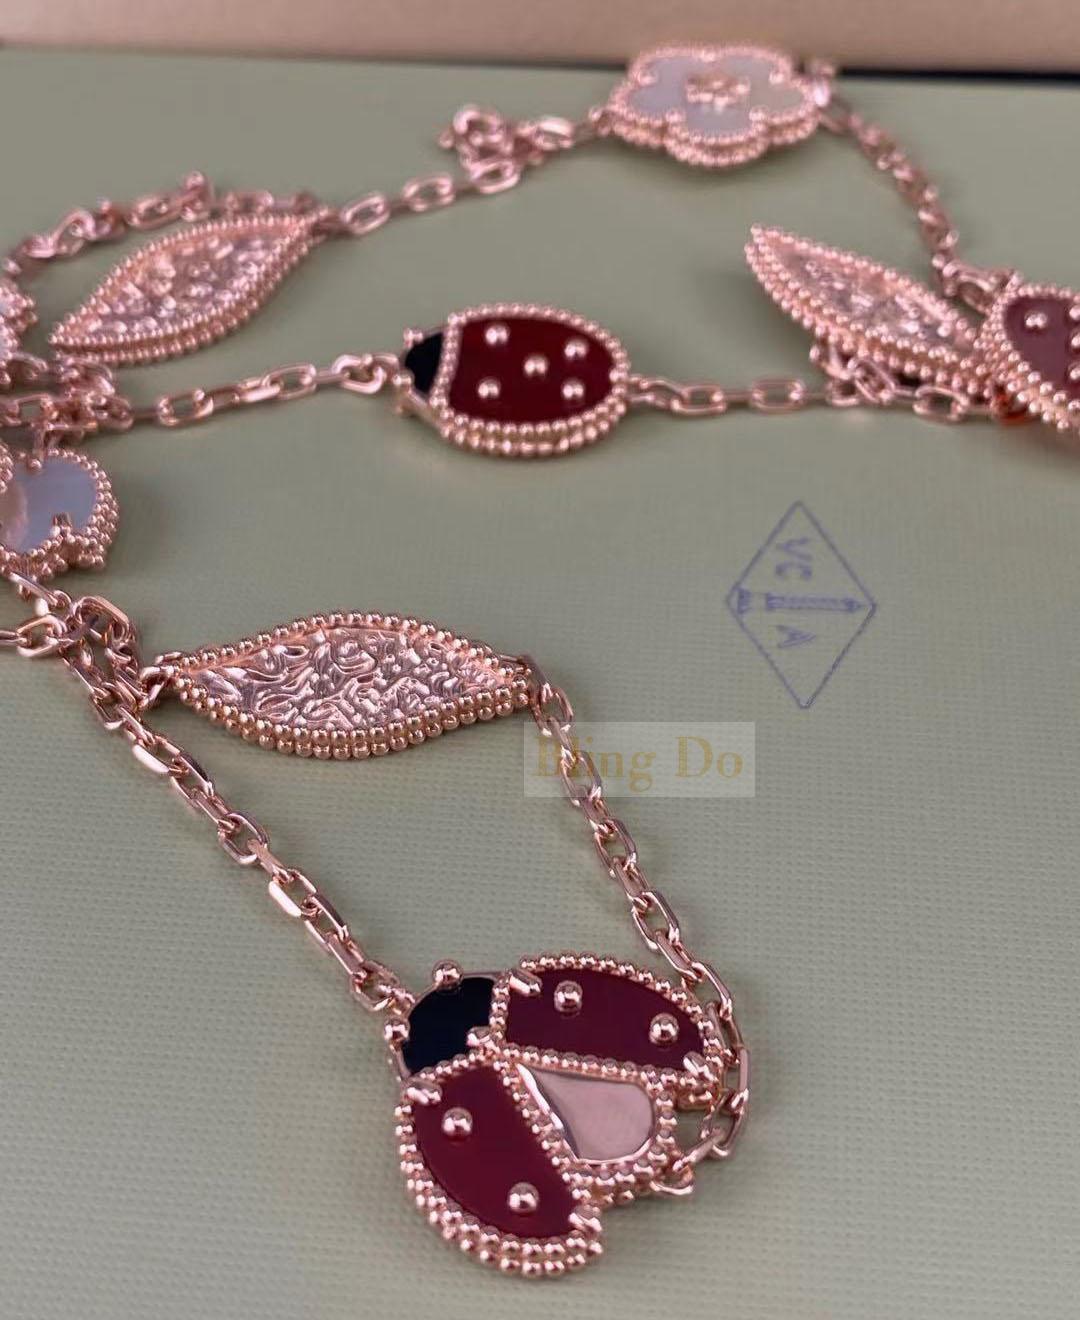 Van Cleef & Arpels 18k Rose Gold Motiv Alhambra Necklace - Estate Jewelry